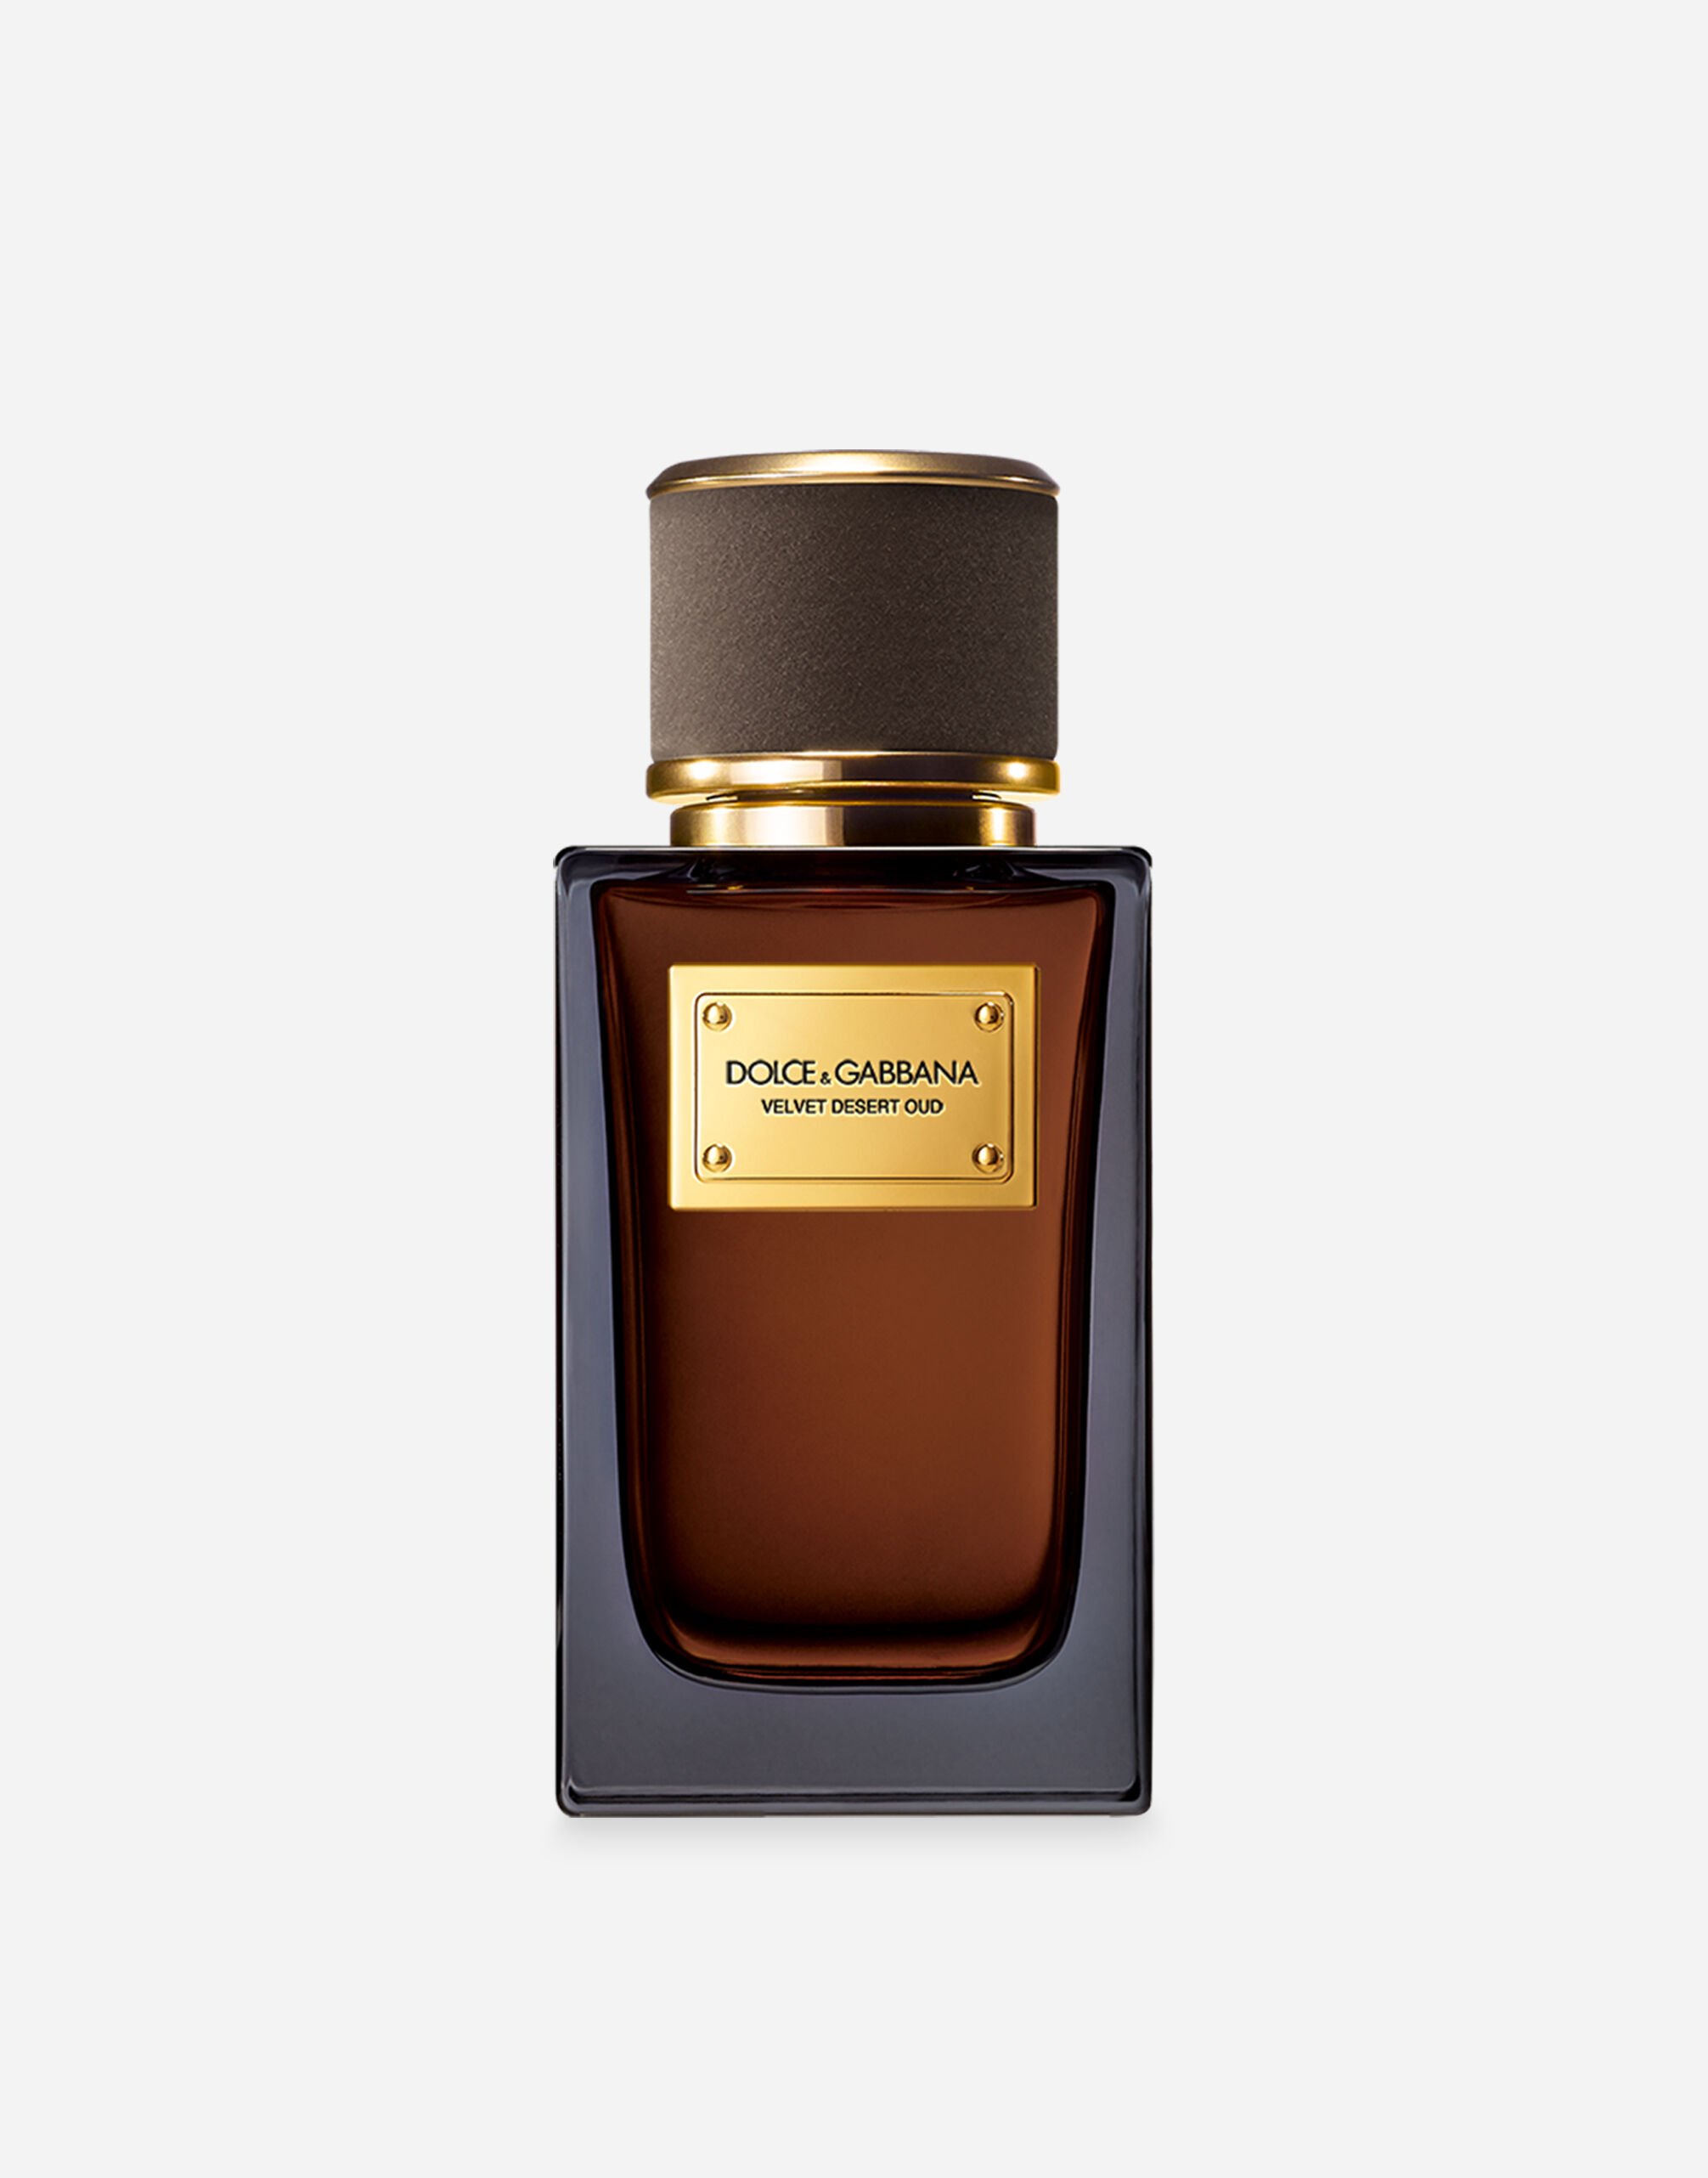 Dolce & Gabbana Velvet Desert Oud Eau de Parfum - VP003HVP000